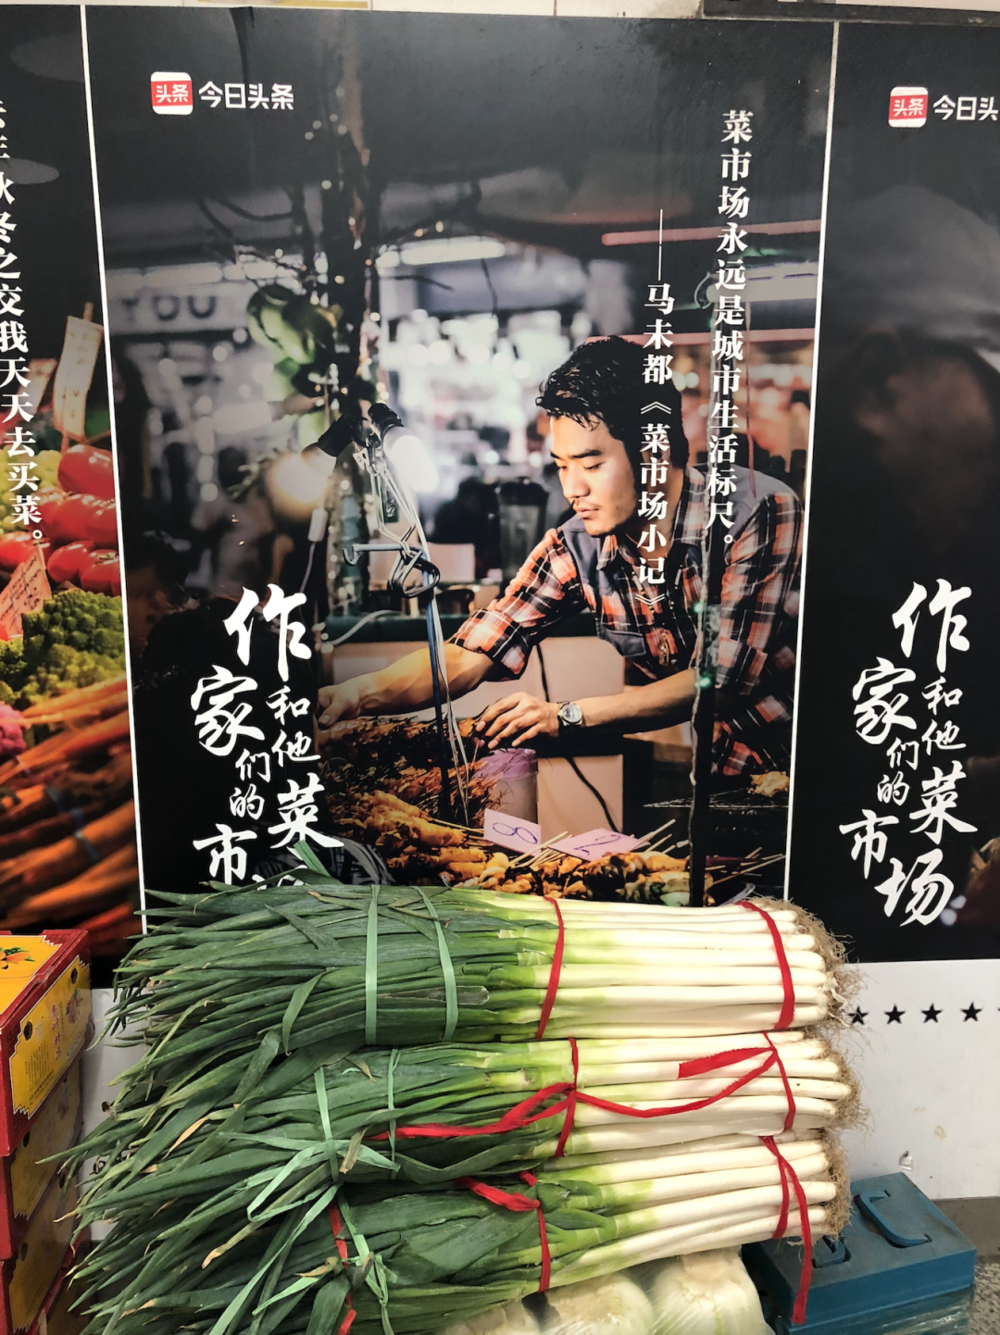 北京朝内南小街菜市场也曾经和互联网大厂合作。但放置这样的展板真的能让菜市场更有吸引力吗？图：钟淑如<br>